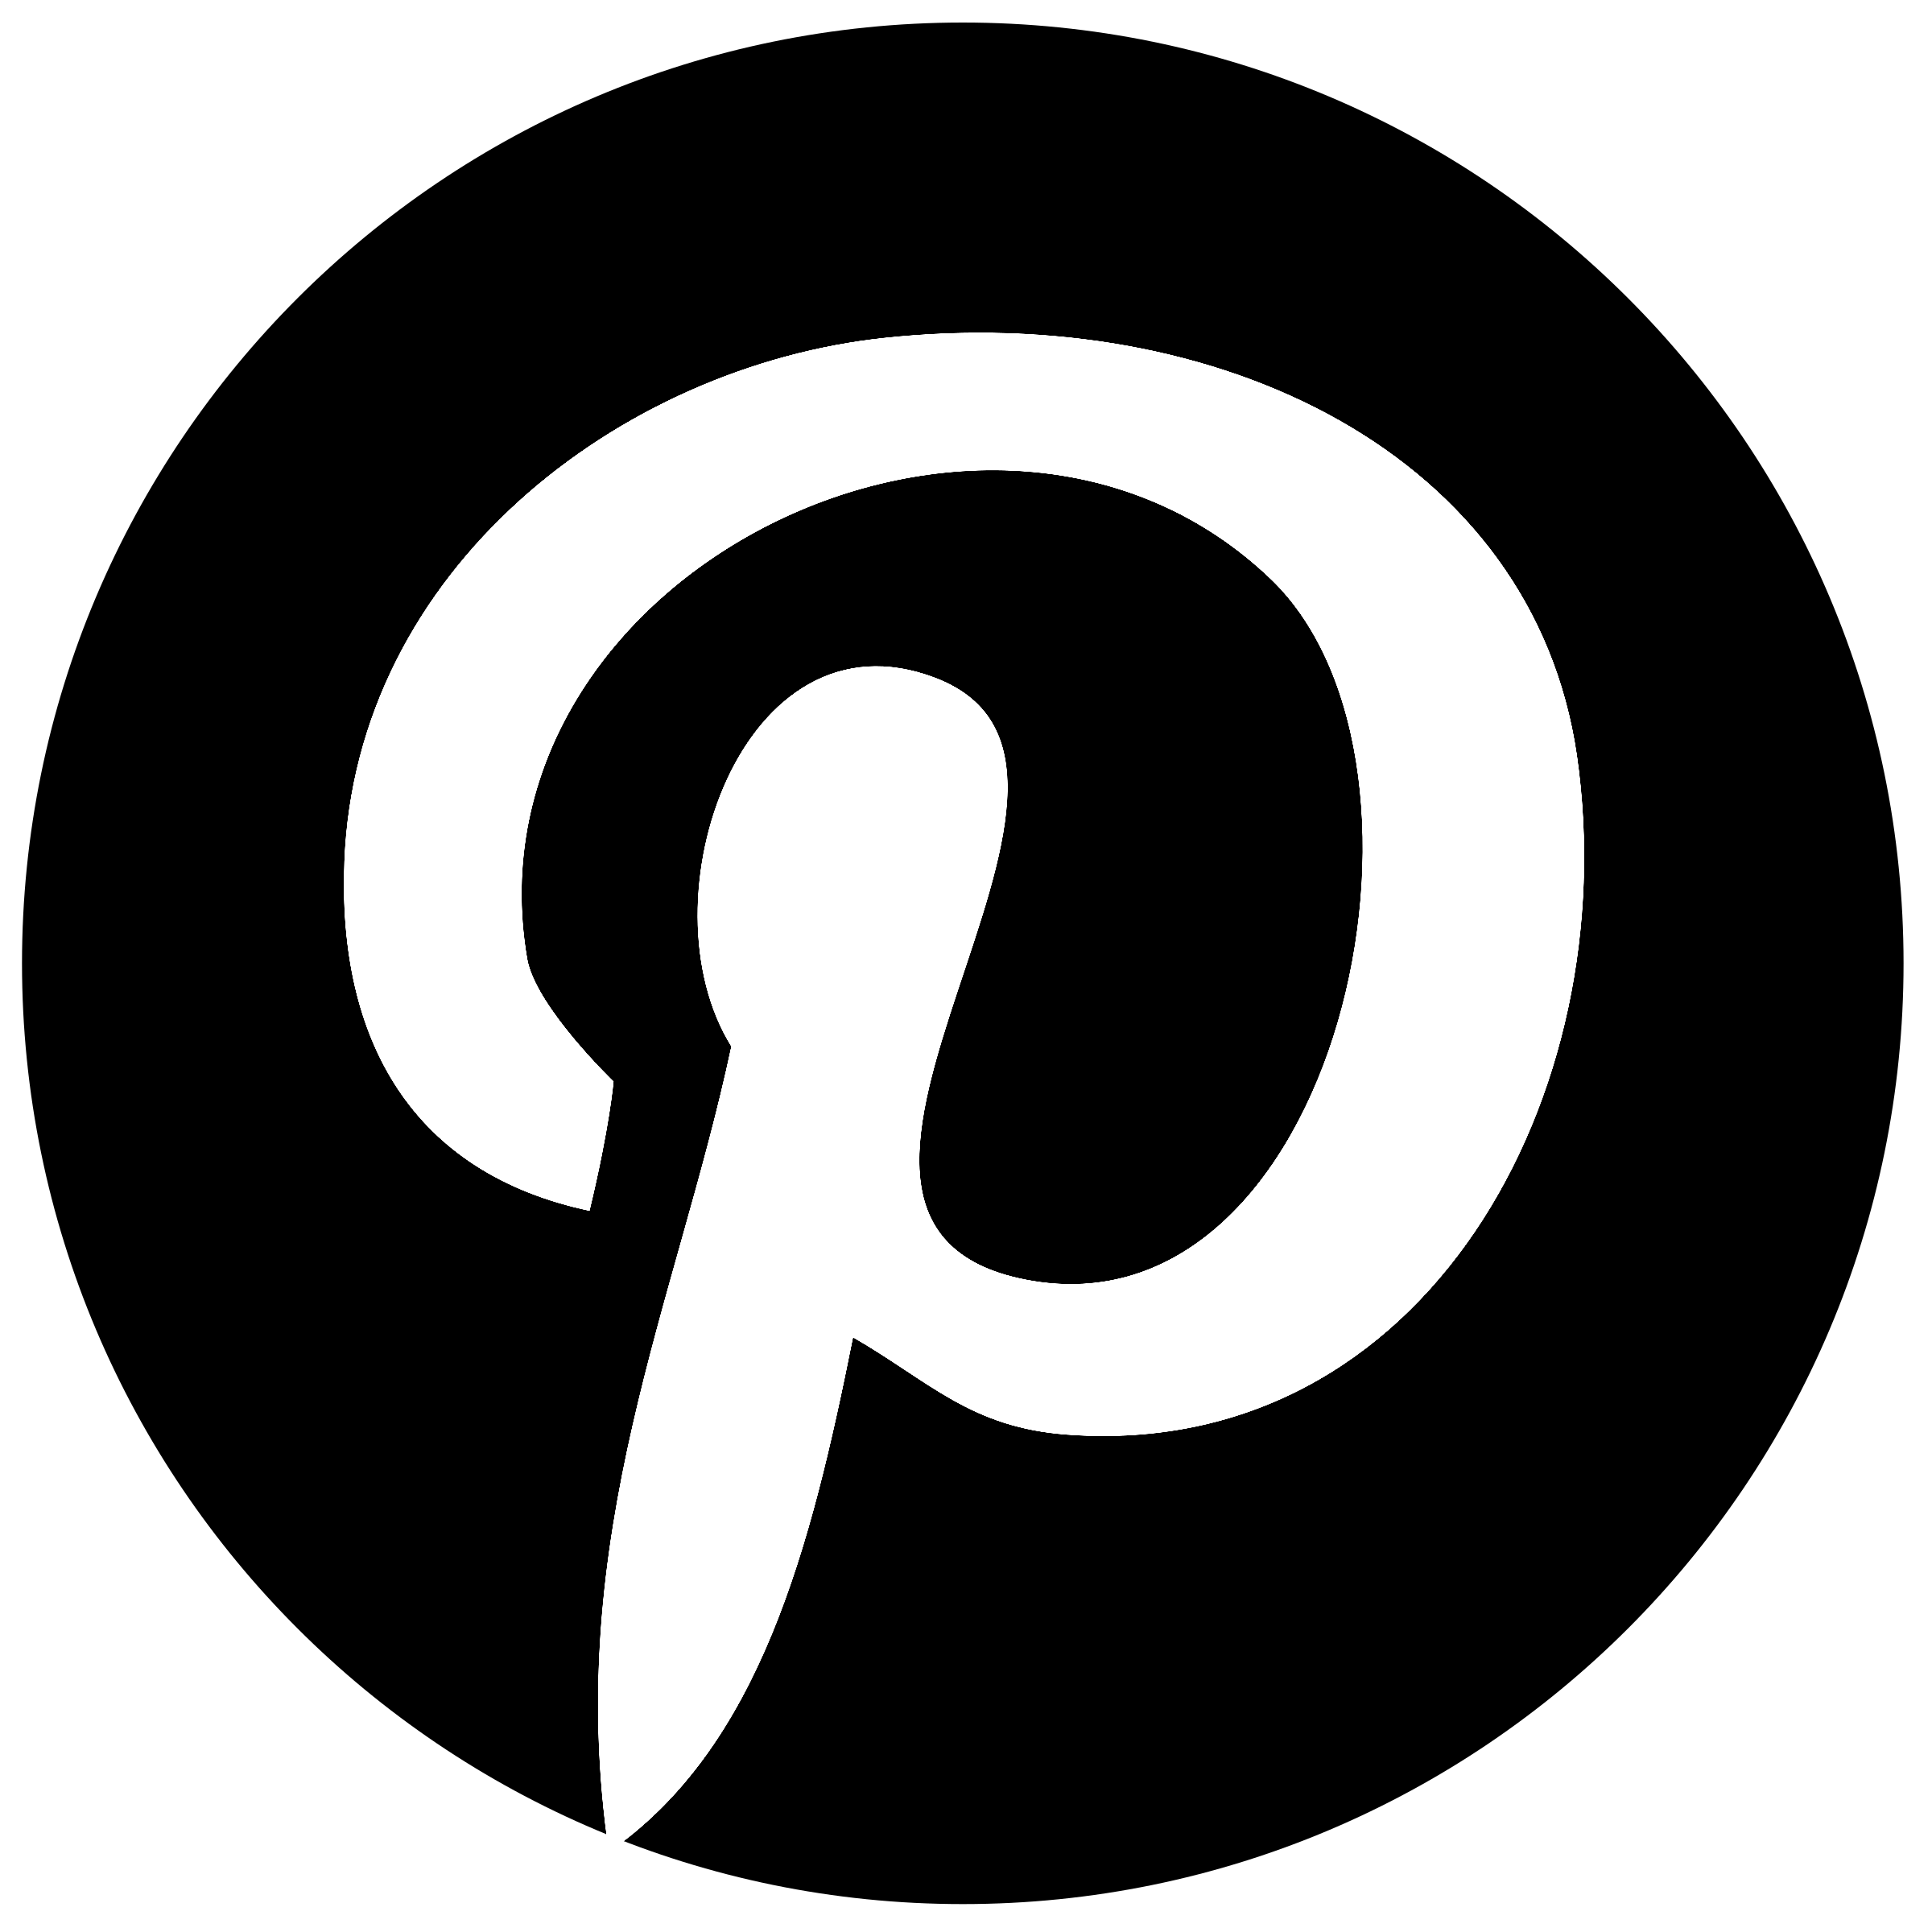 Pinterest Logo Download PNG Image